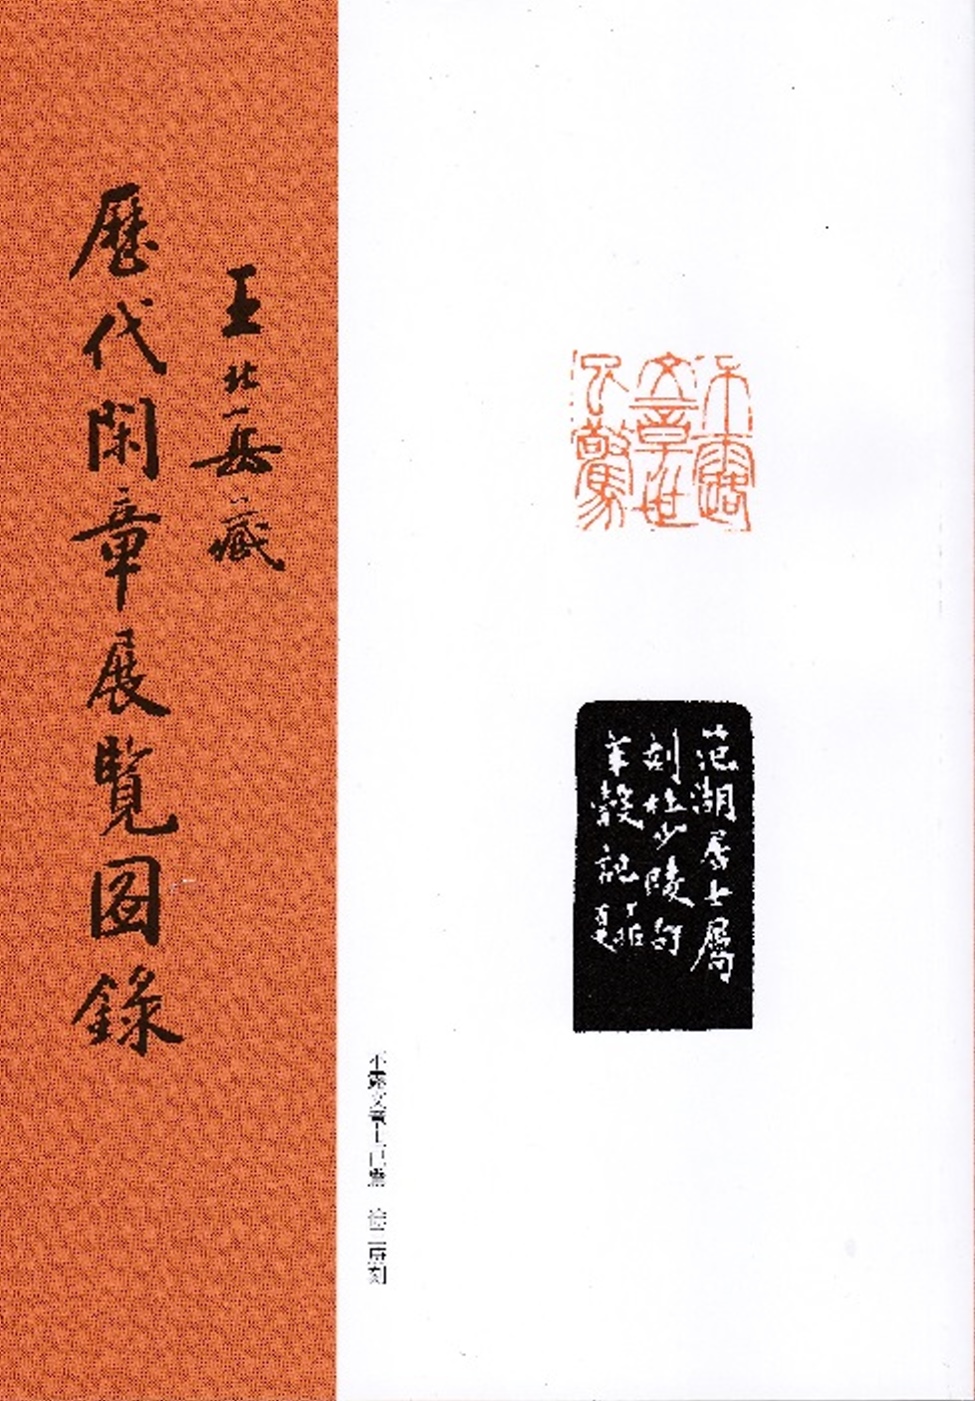 王北岳藏歷代閑章展覽圖錄